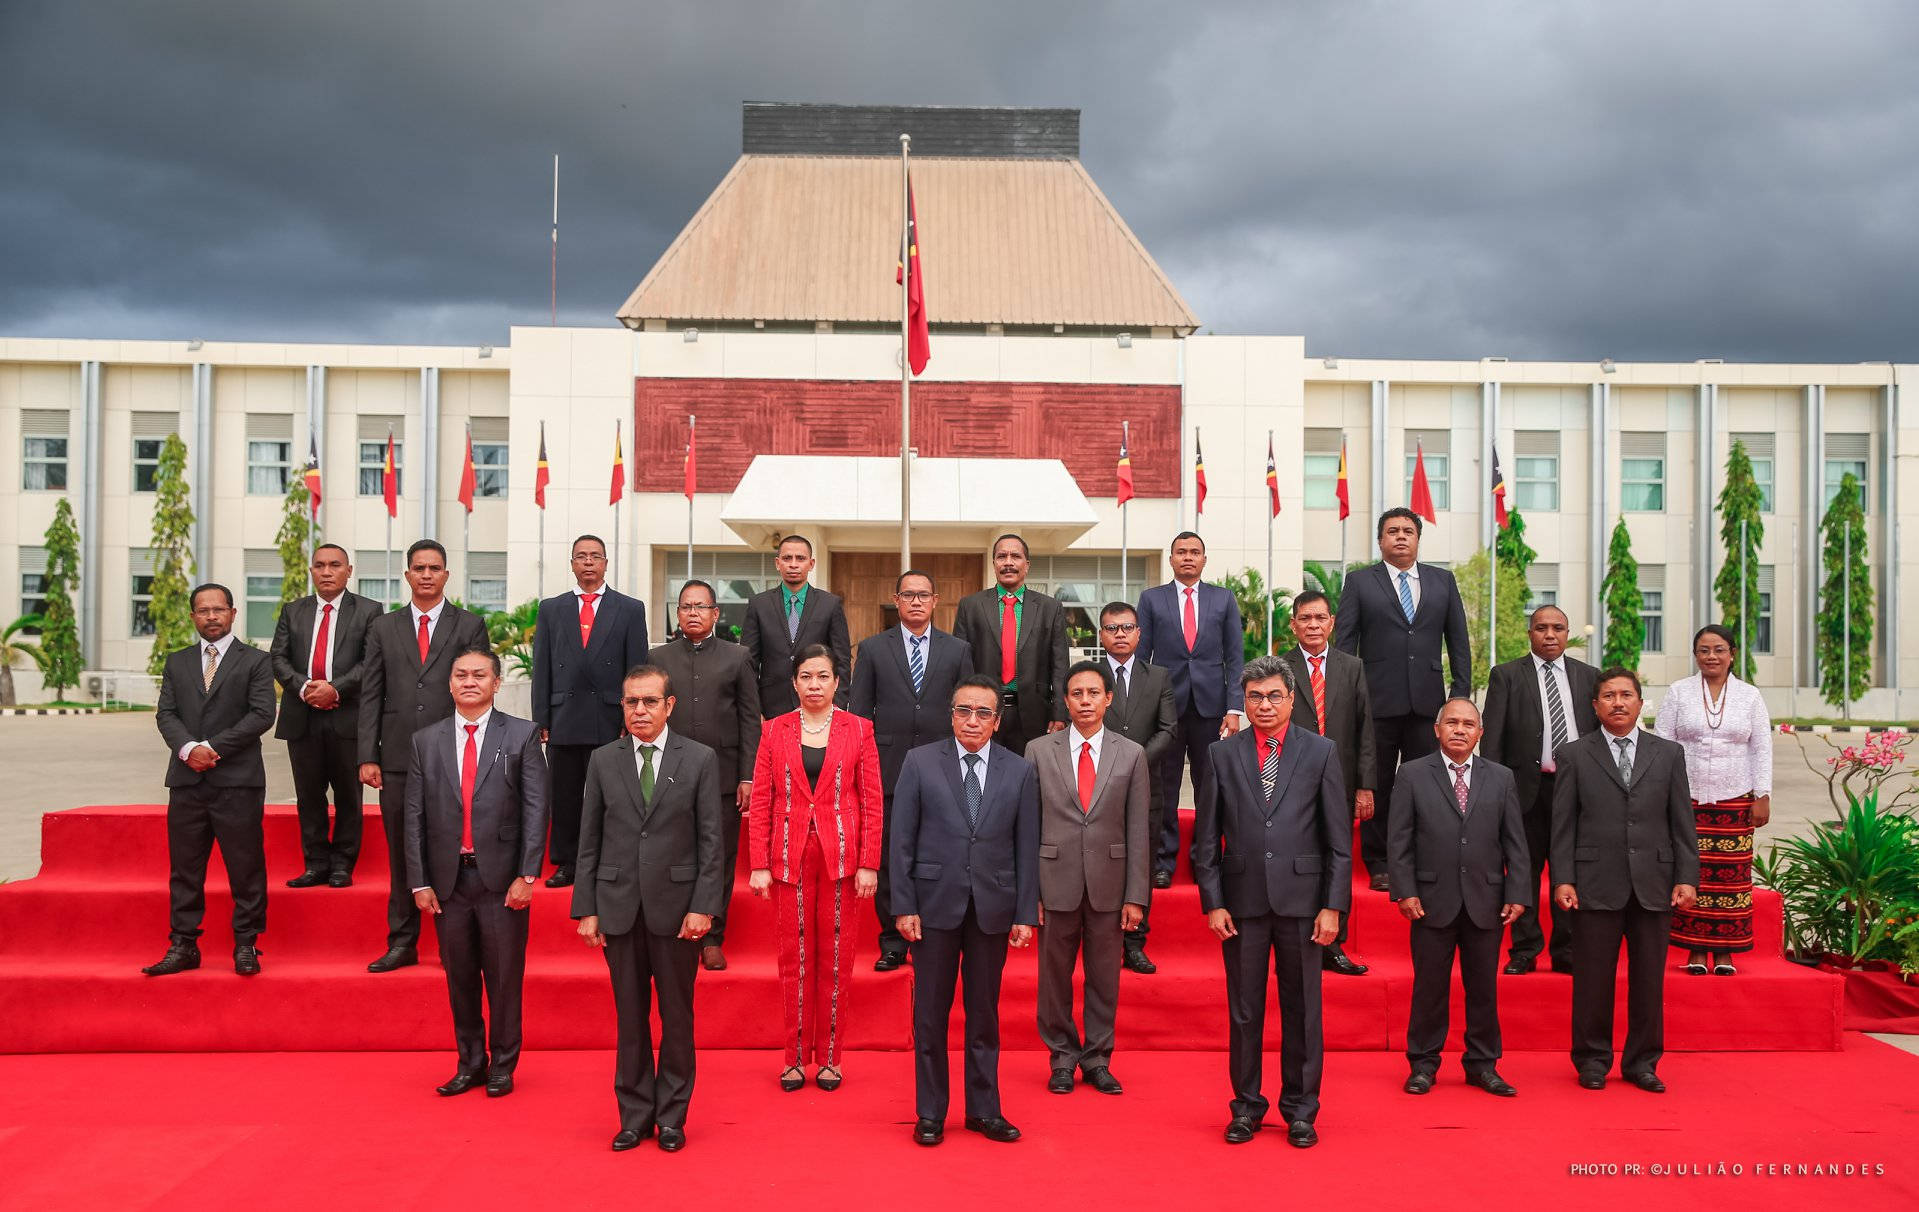 Otteende konstitutionelle regering af Timor-Leste Wallpaper